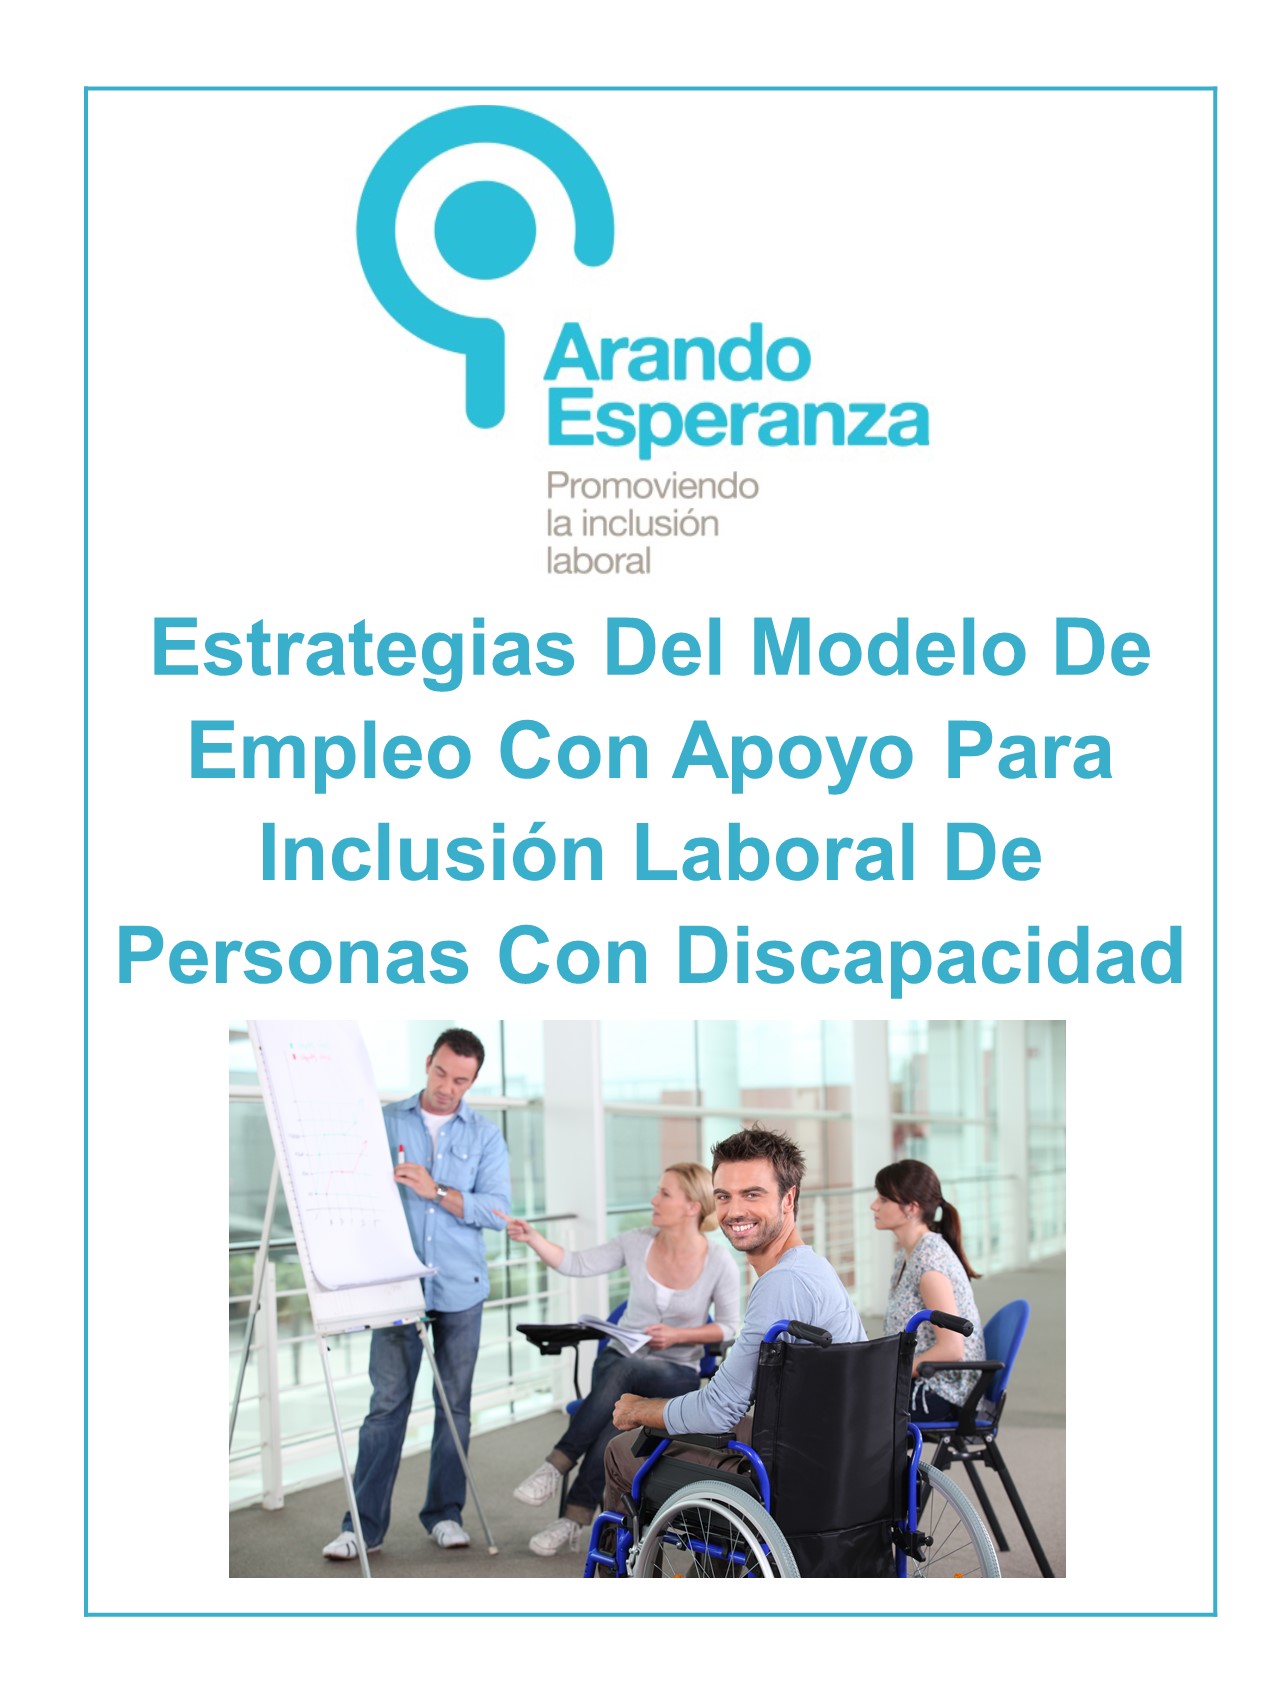 Estrategias Del Modelo De Empleo Con Apoyo Para Inclusión Laboral De Personas Con Discapacidad